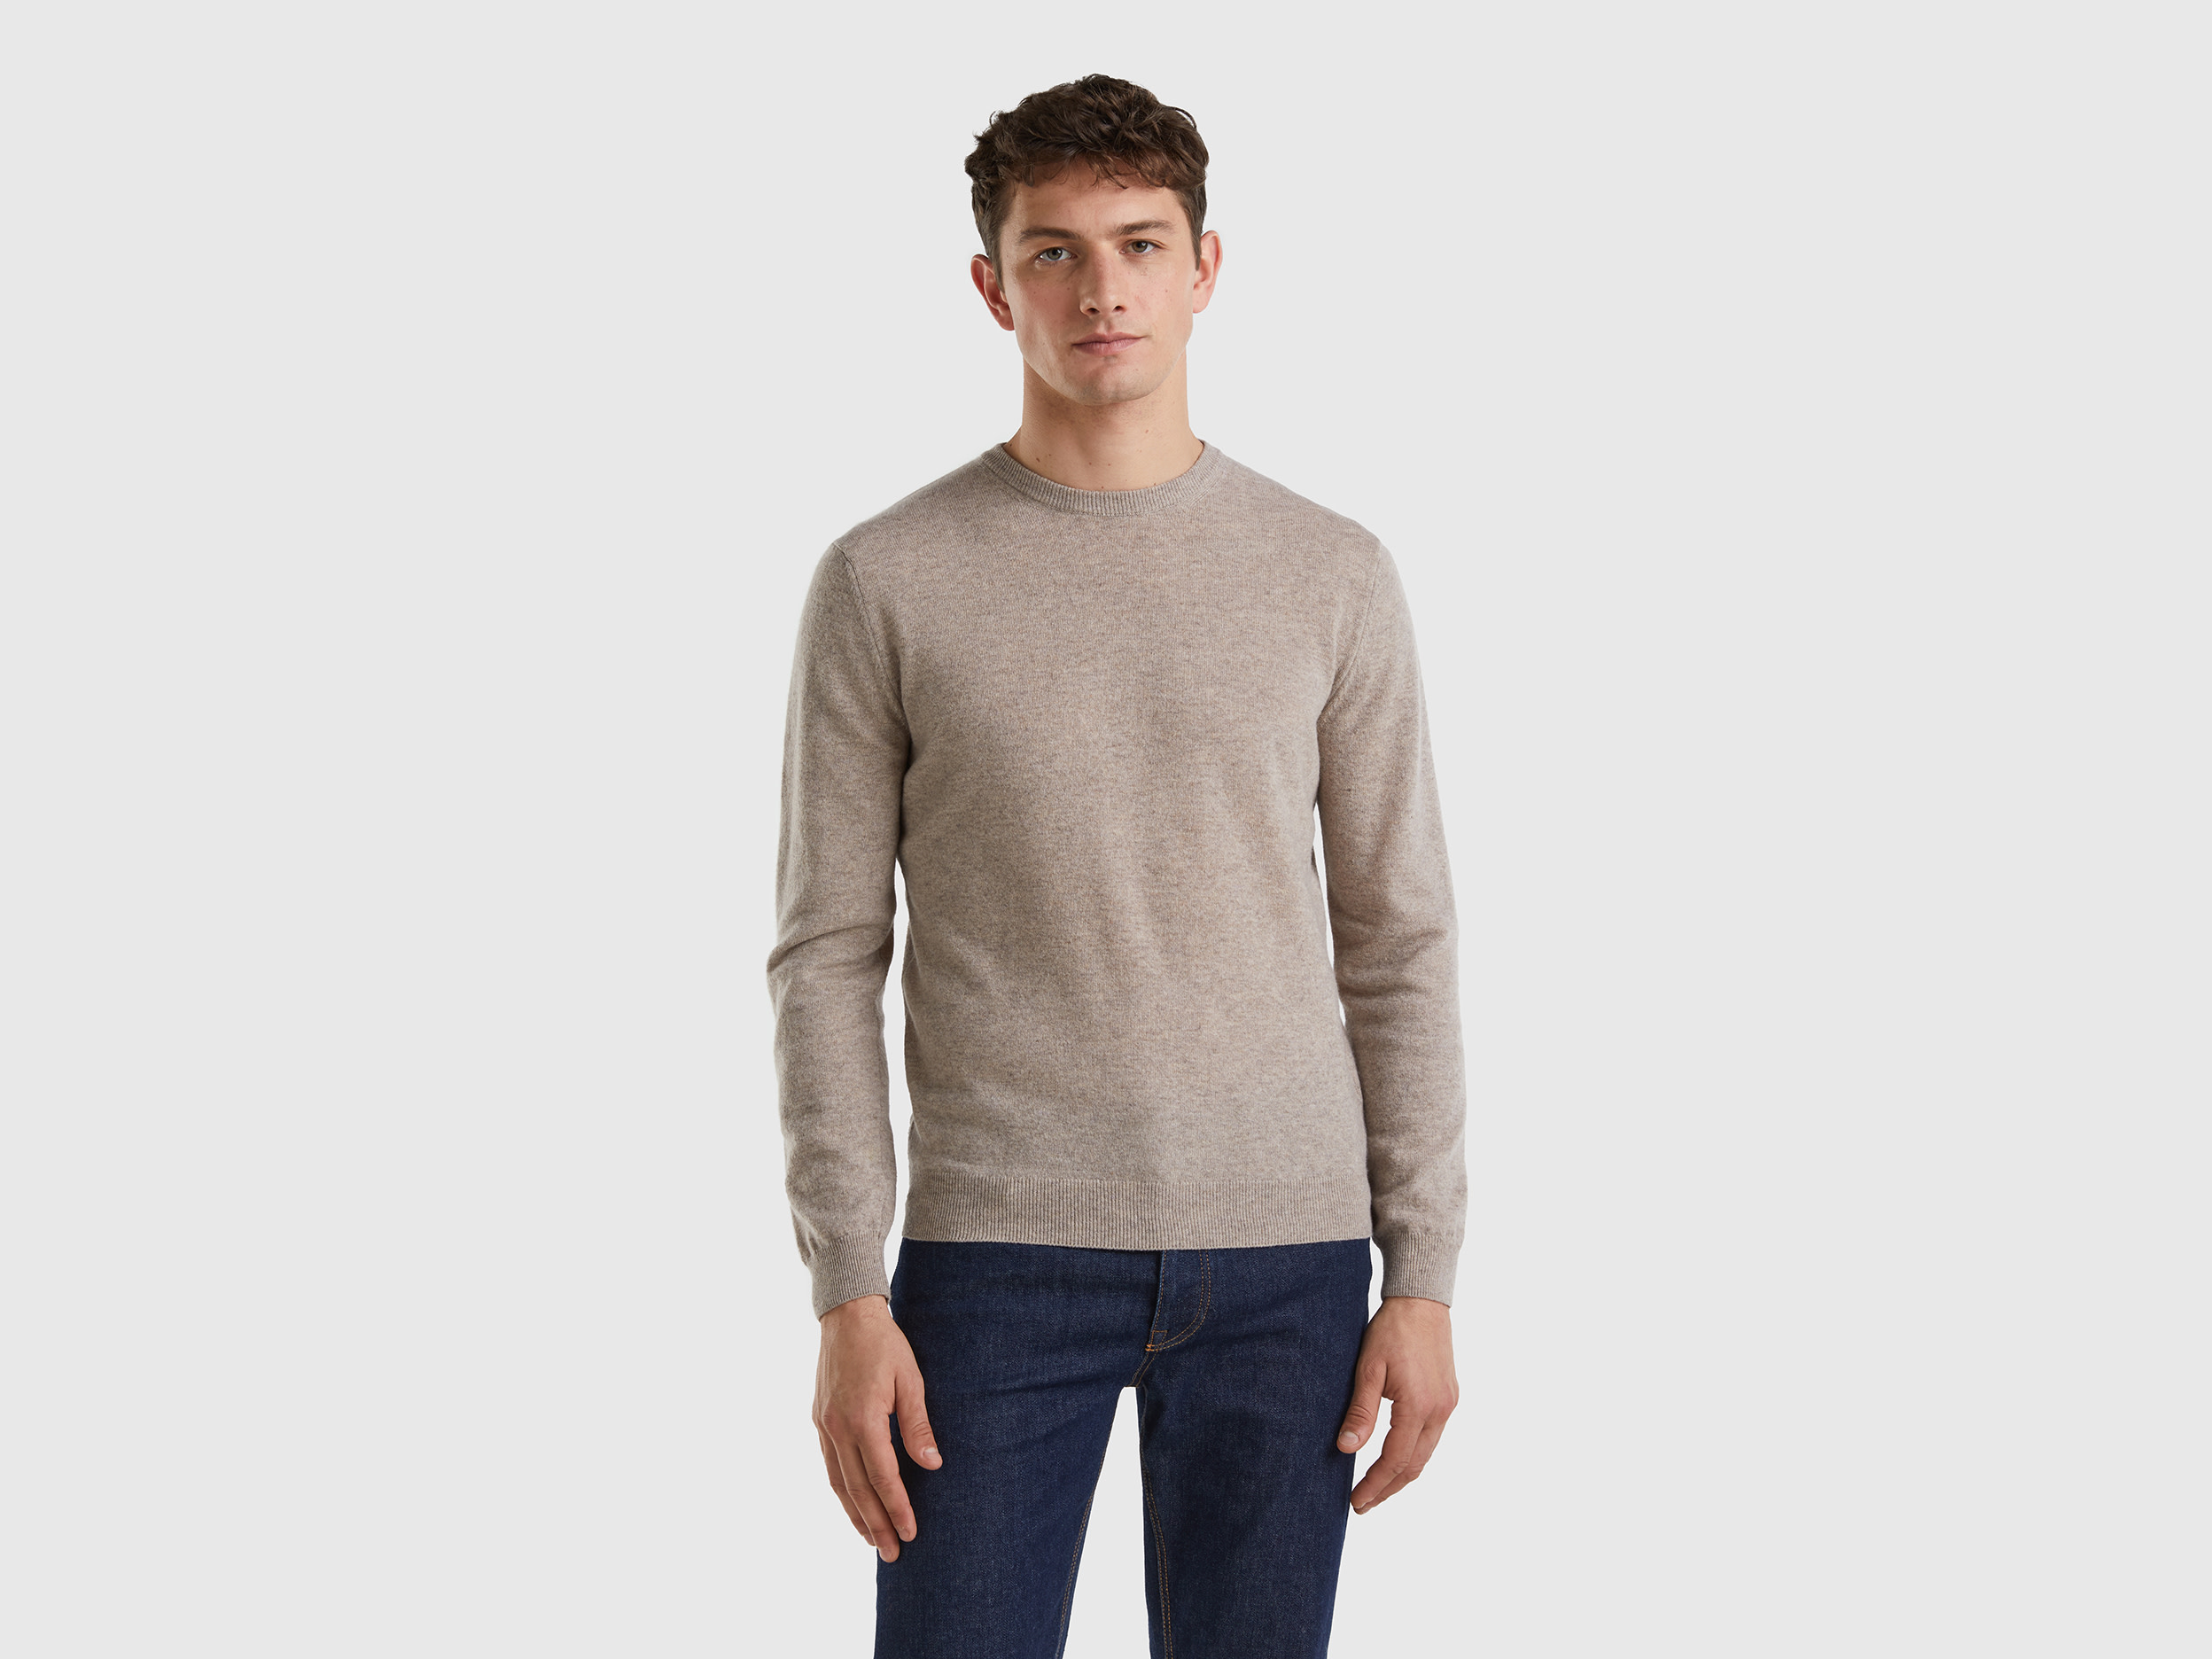 Benetton, Dove Gray Crew Neck Sweater In Pure Merino Wool, size L, Dove Gray, Men